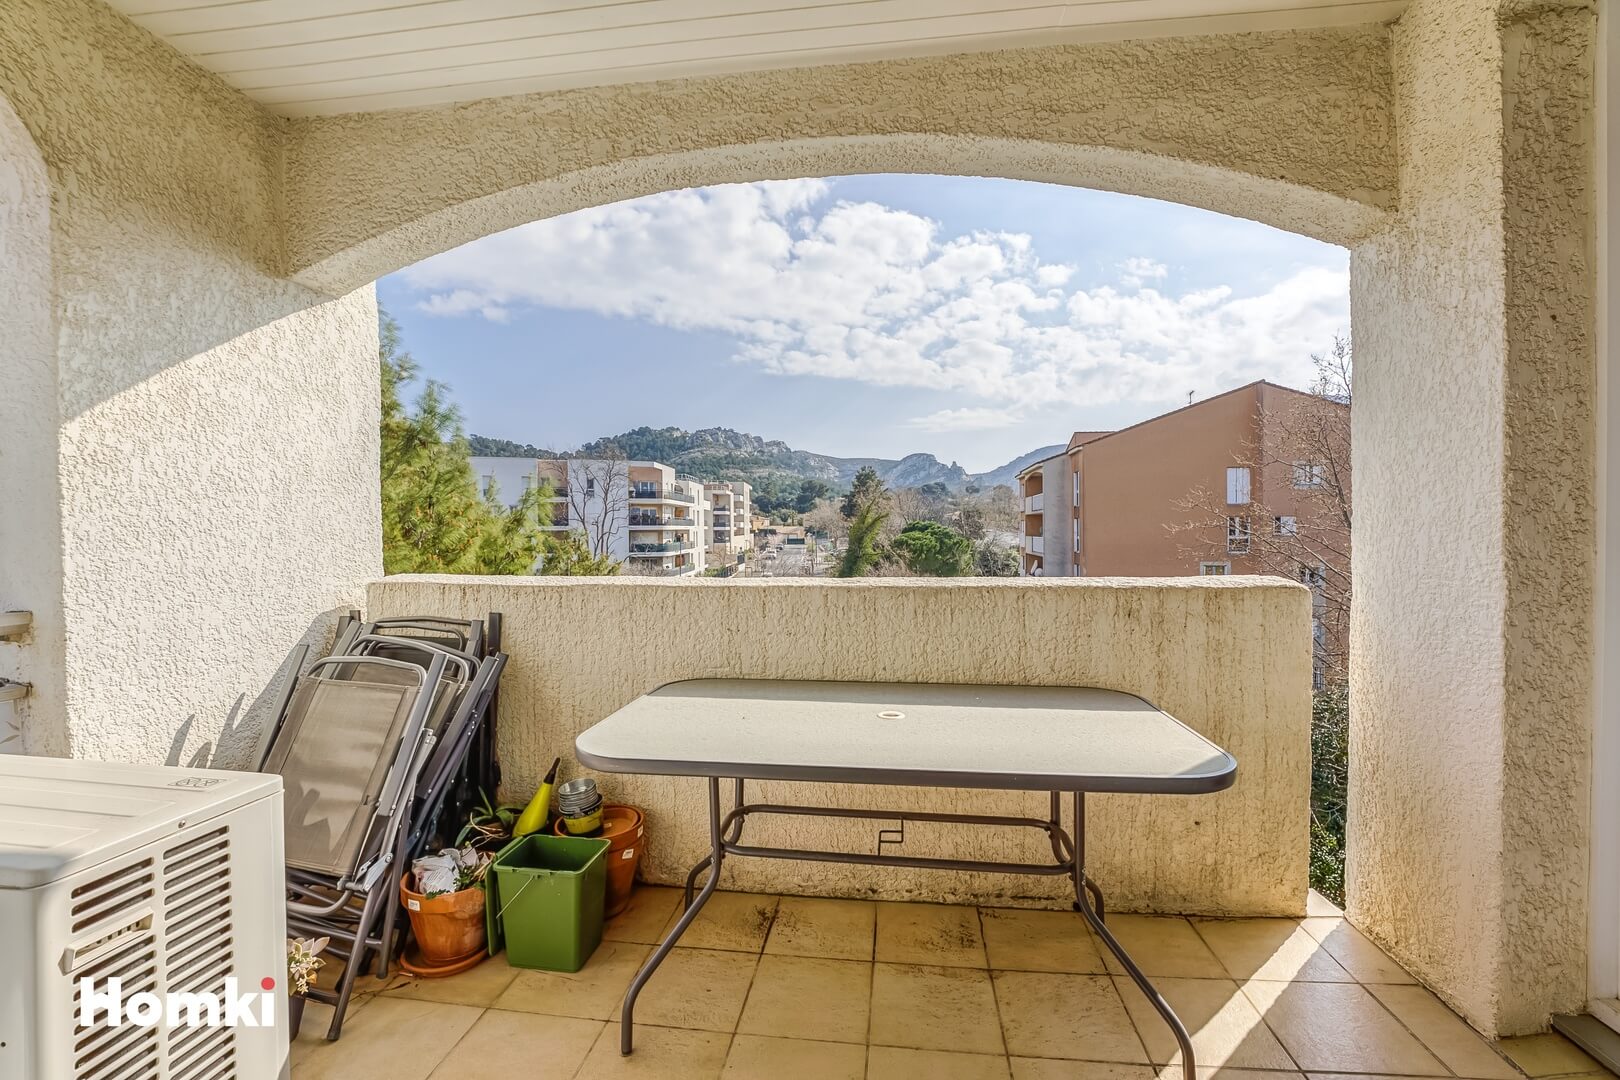 Homki - Vente Appartement  de 94.0 m² à Marseille 13009